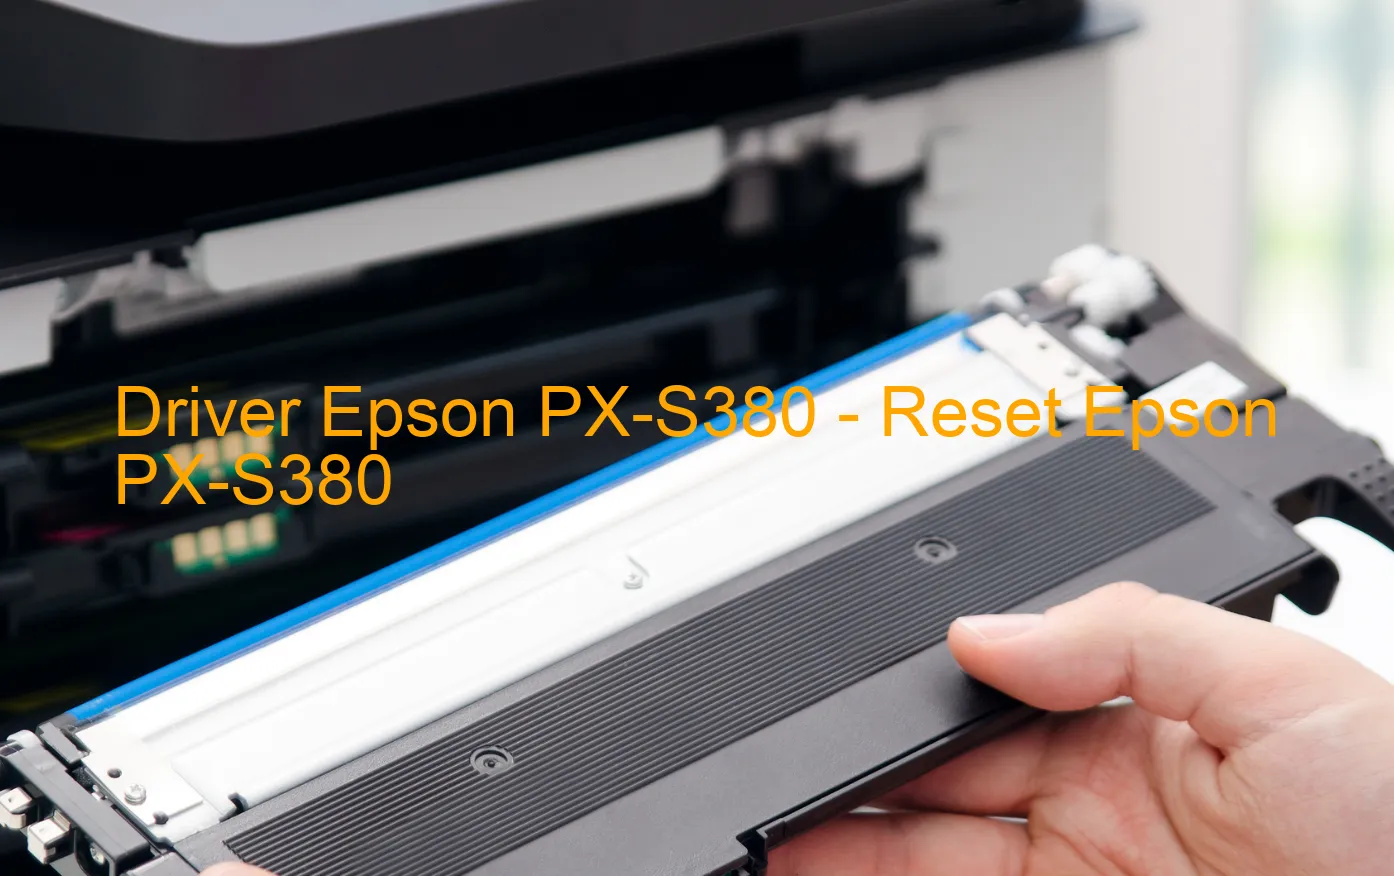 Epson PX-S380のドライバー、Epson PX-S380のリセットソフトウェア